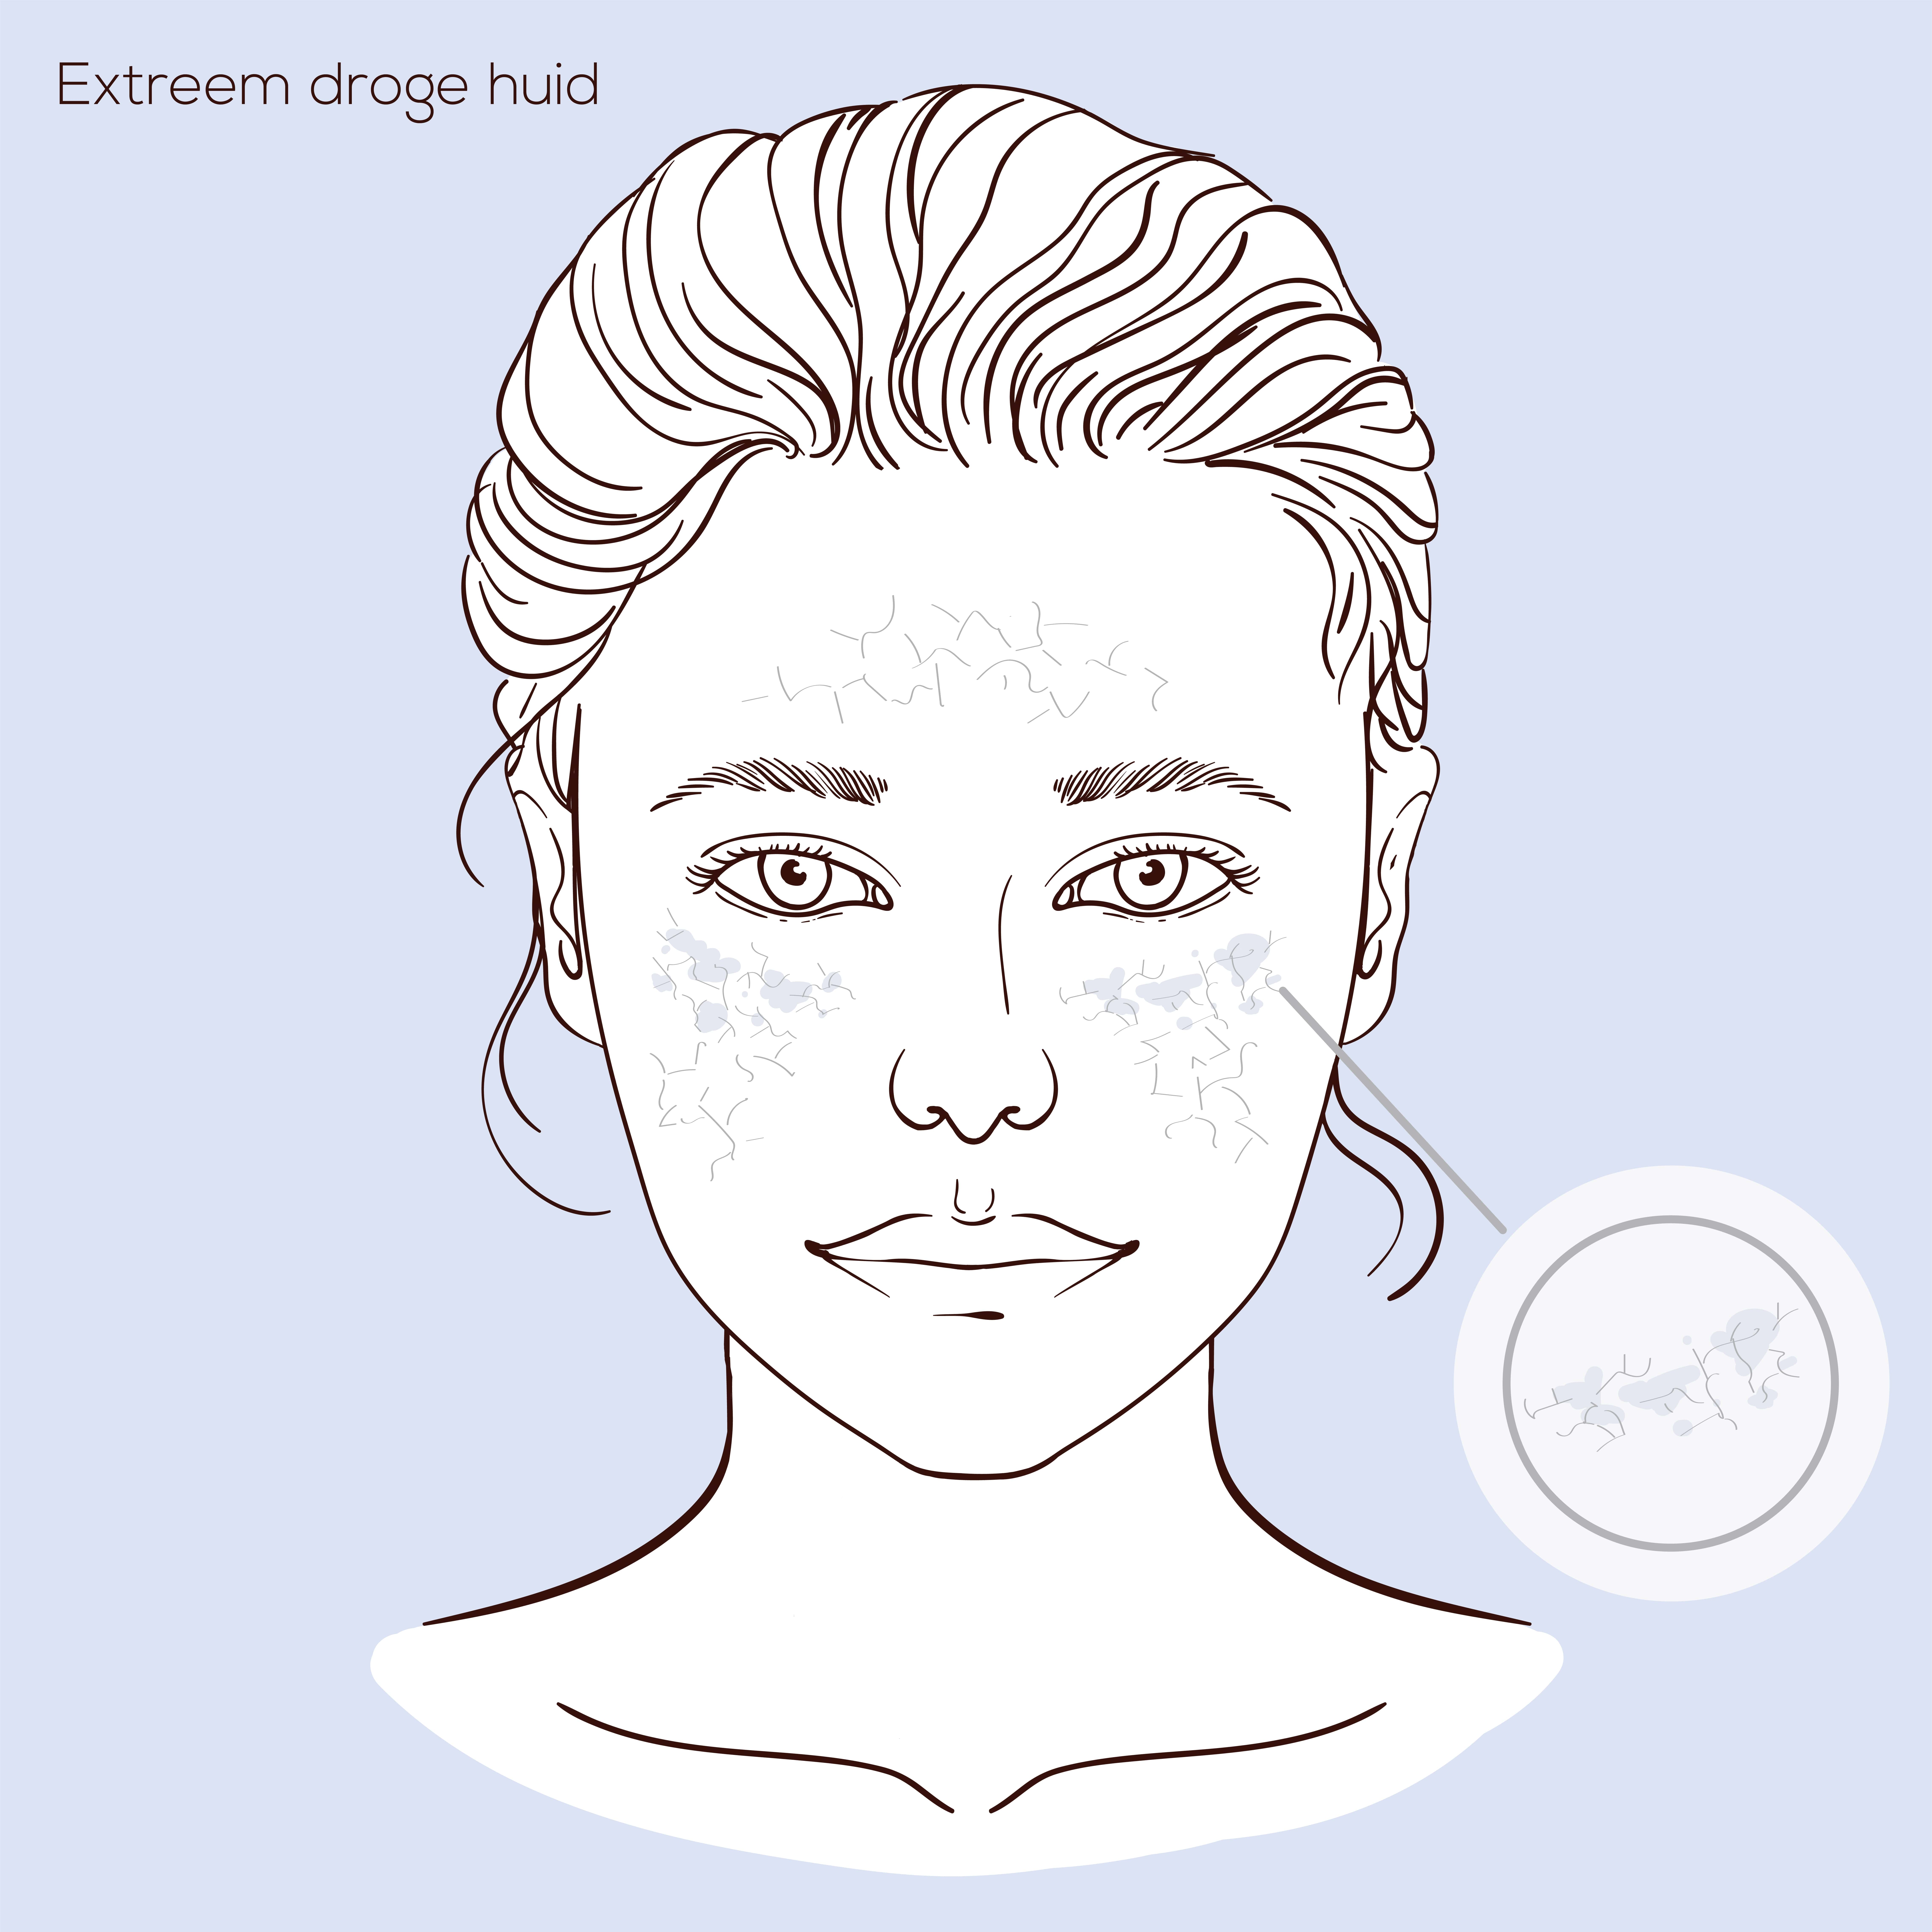 Illustratie van gezicht met huidprobleem extreem droge huid